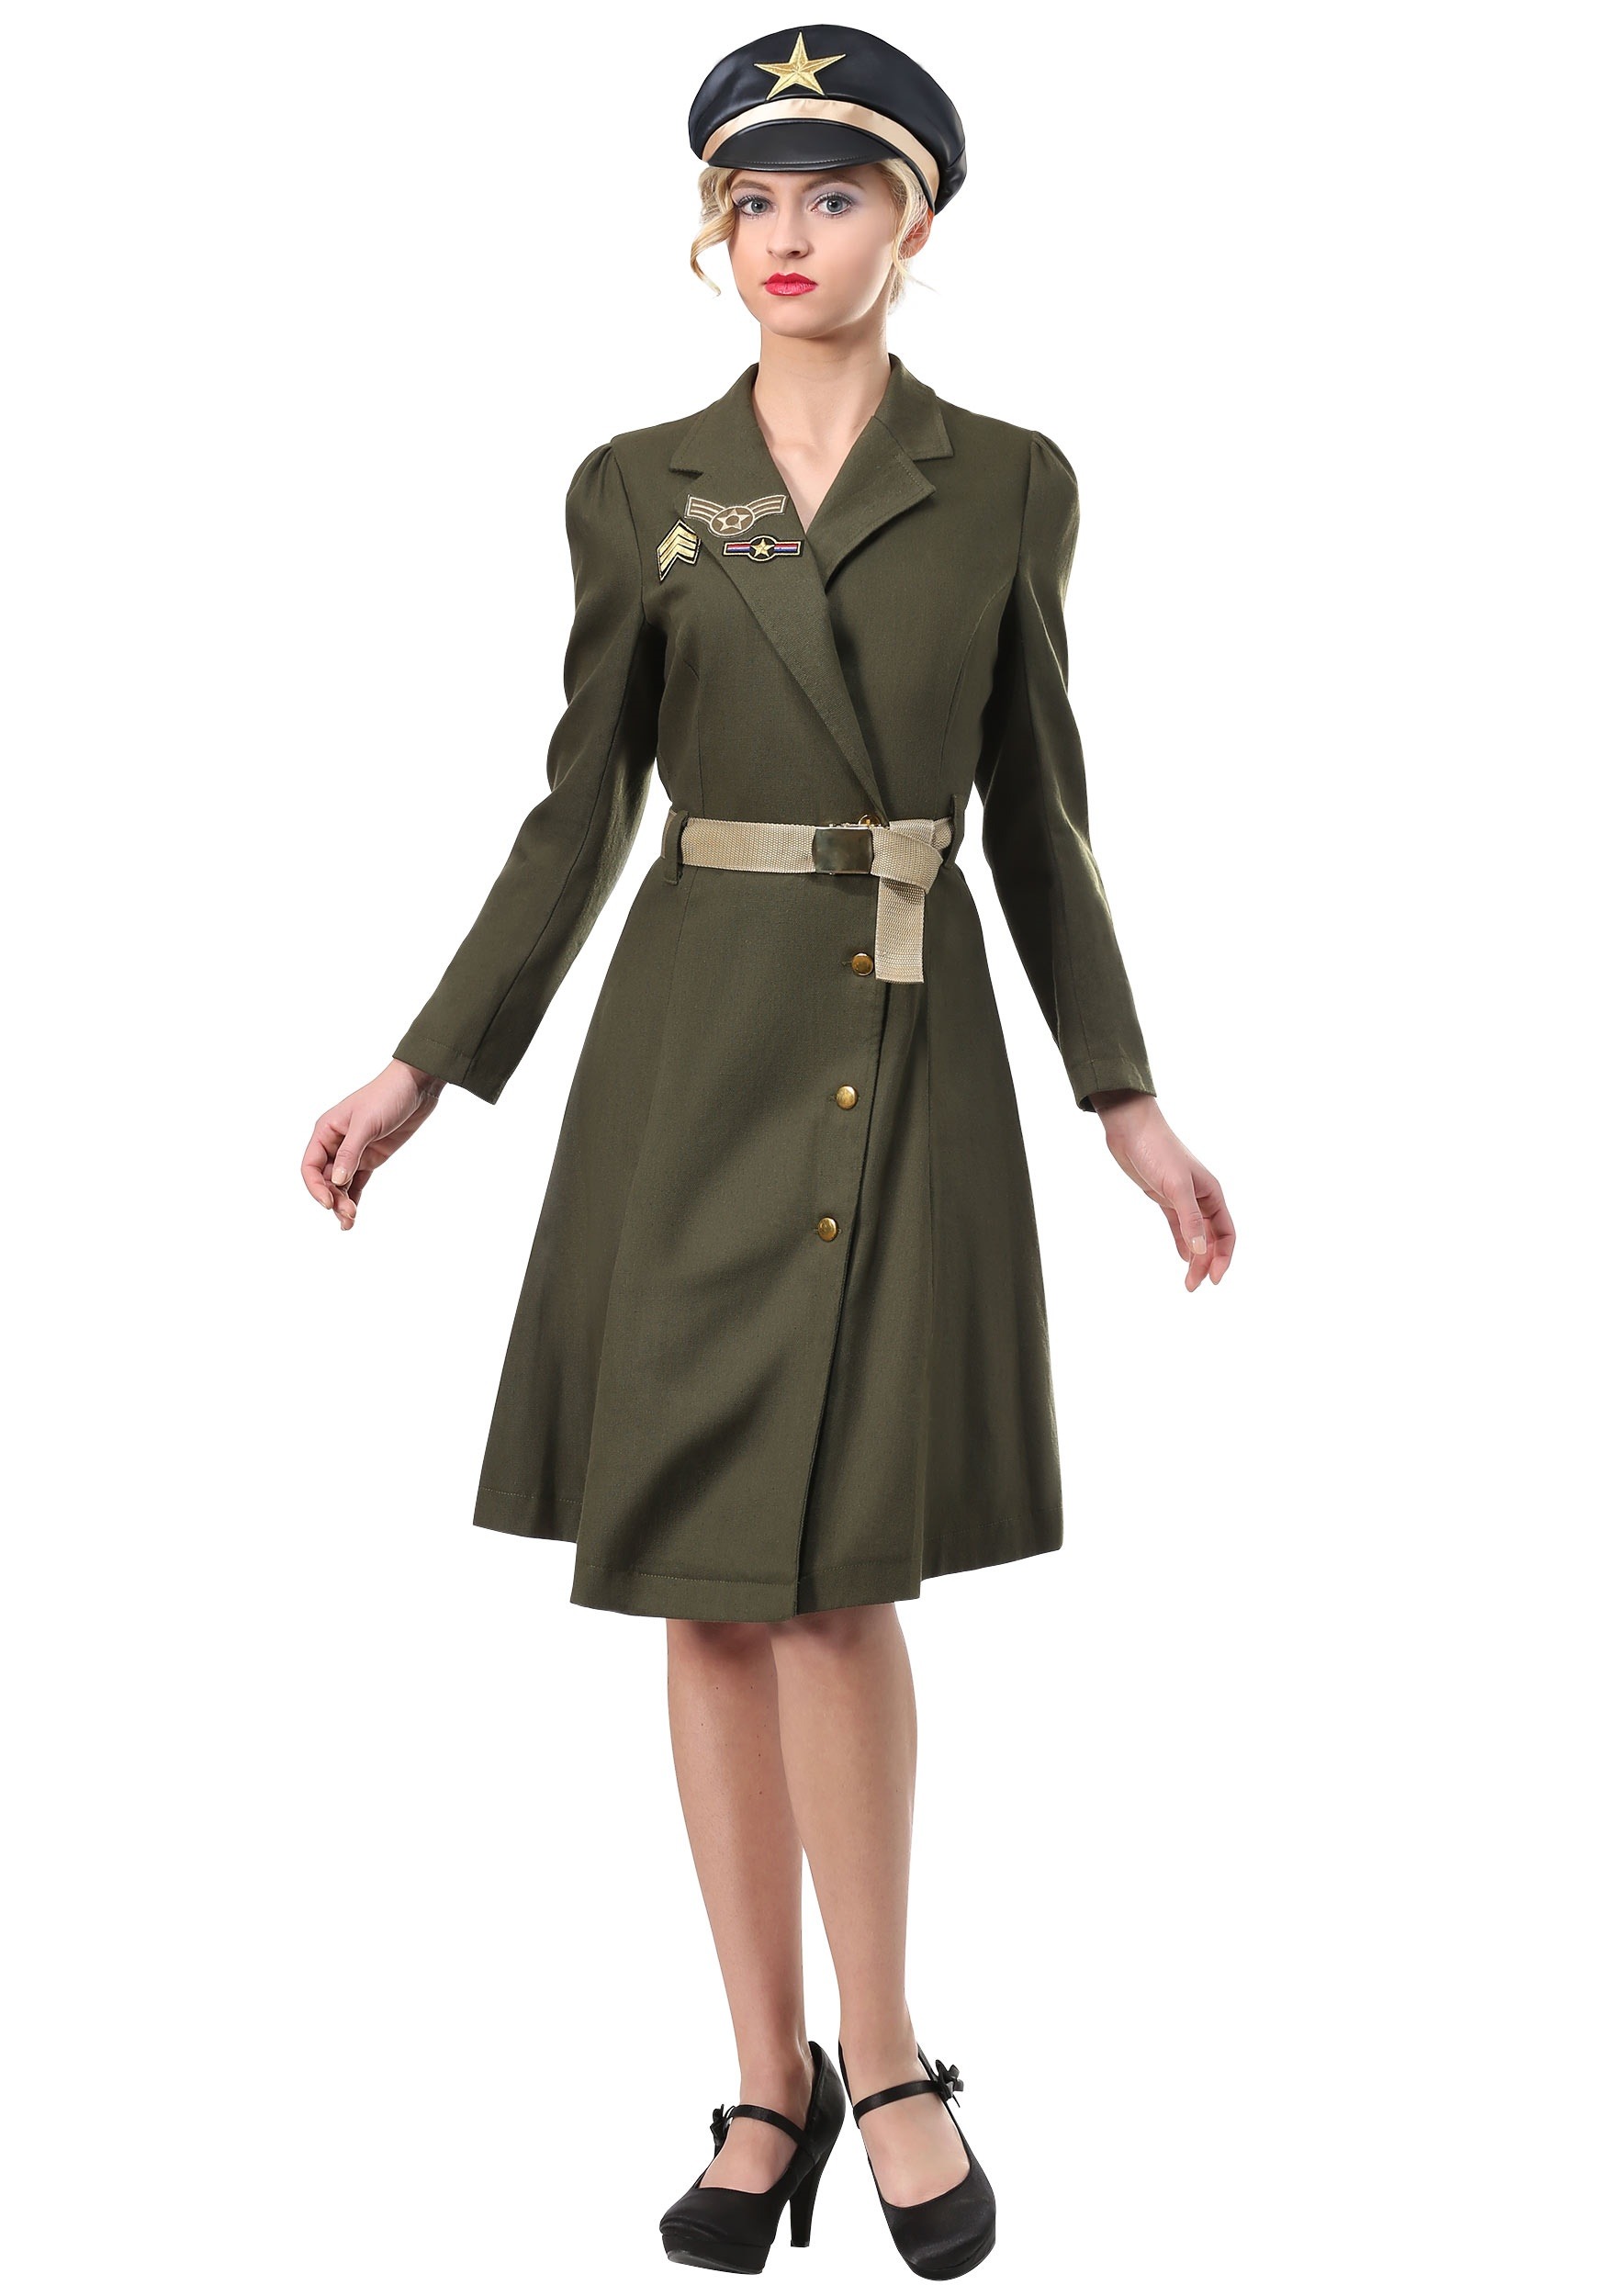 Bombshell Military Captain Fancy Dress Costume For Women